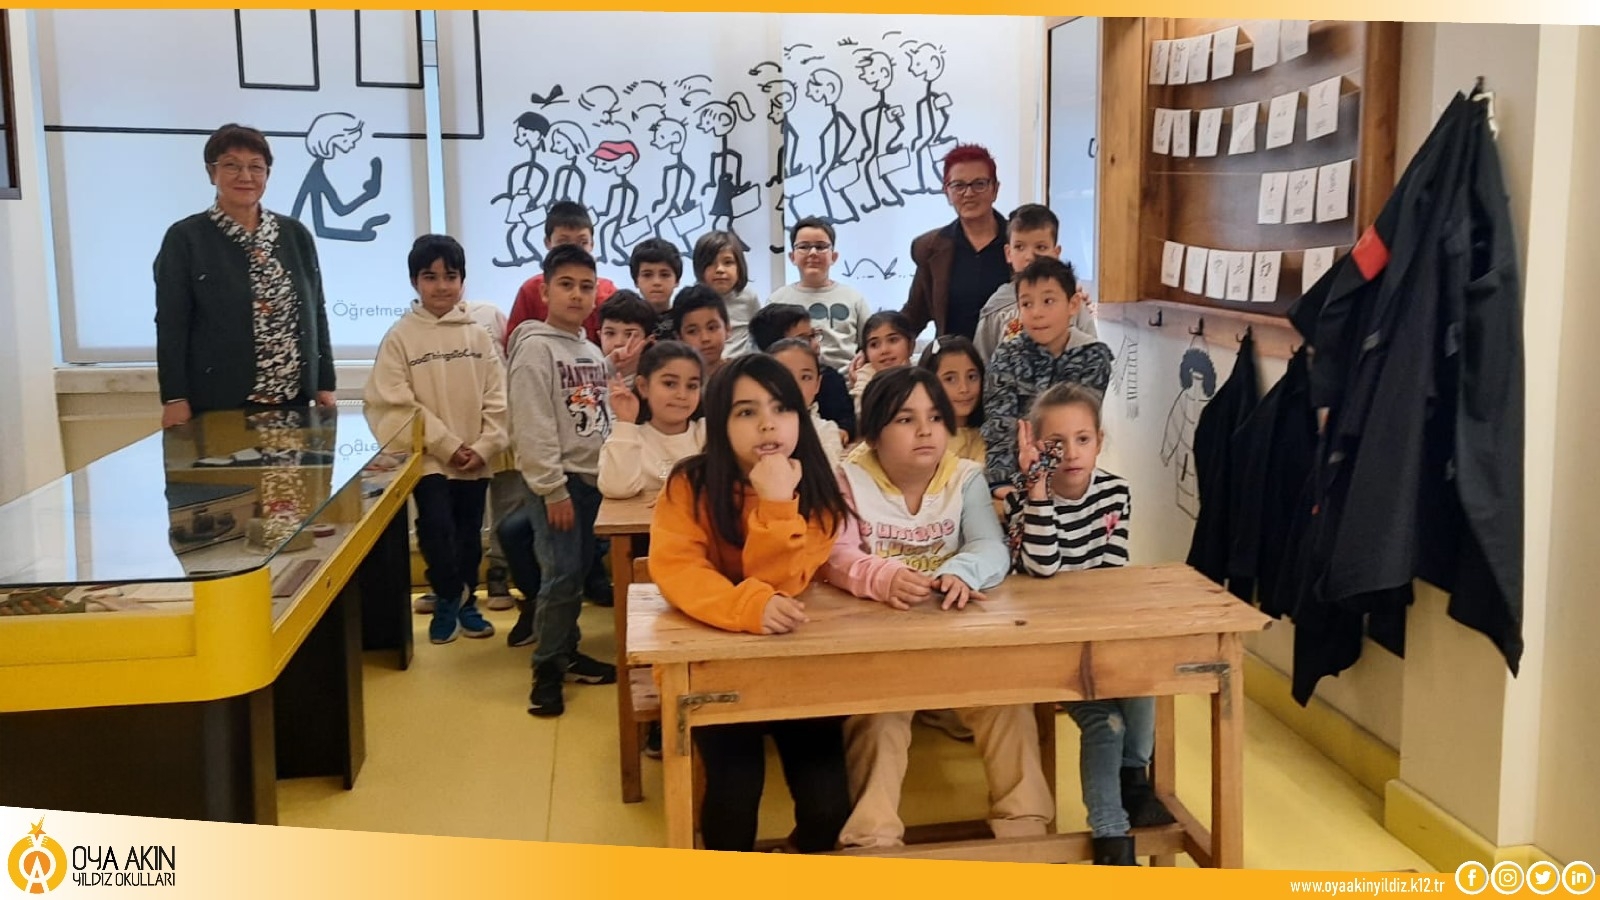 Oya Akın Yıldız Oran İlkokulu 2. Sınıf Öğrencilerimiz ile Cin Ali Müzesi'ni Ziyaret Ettik